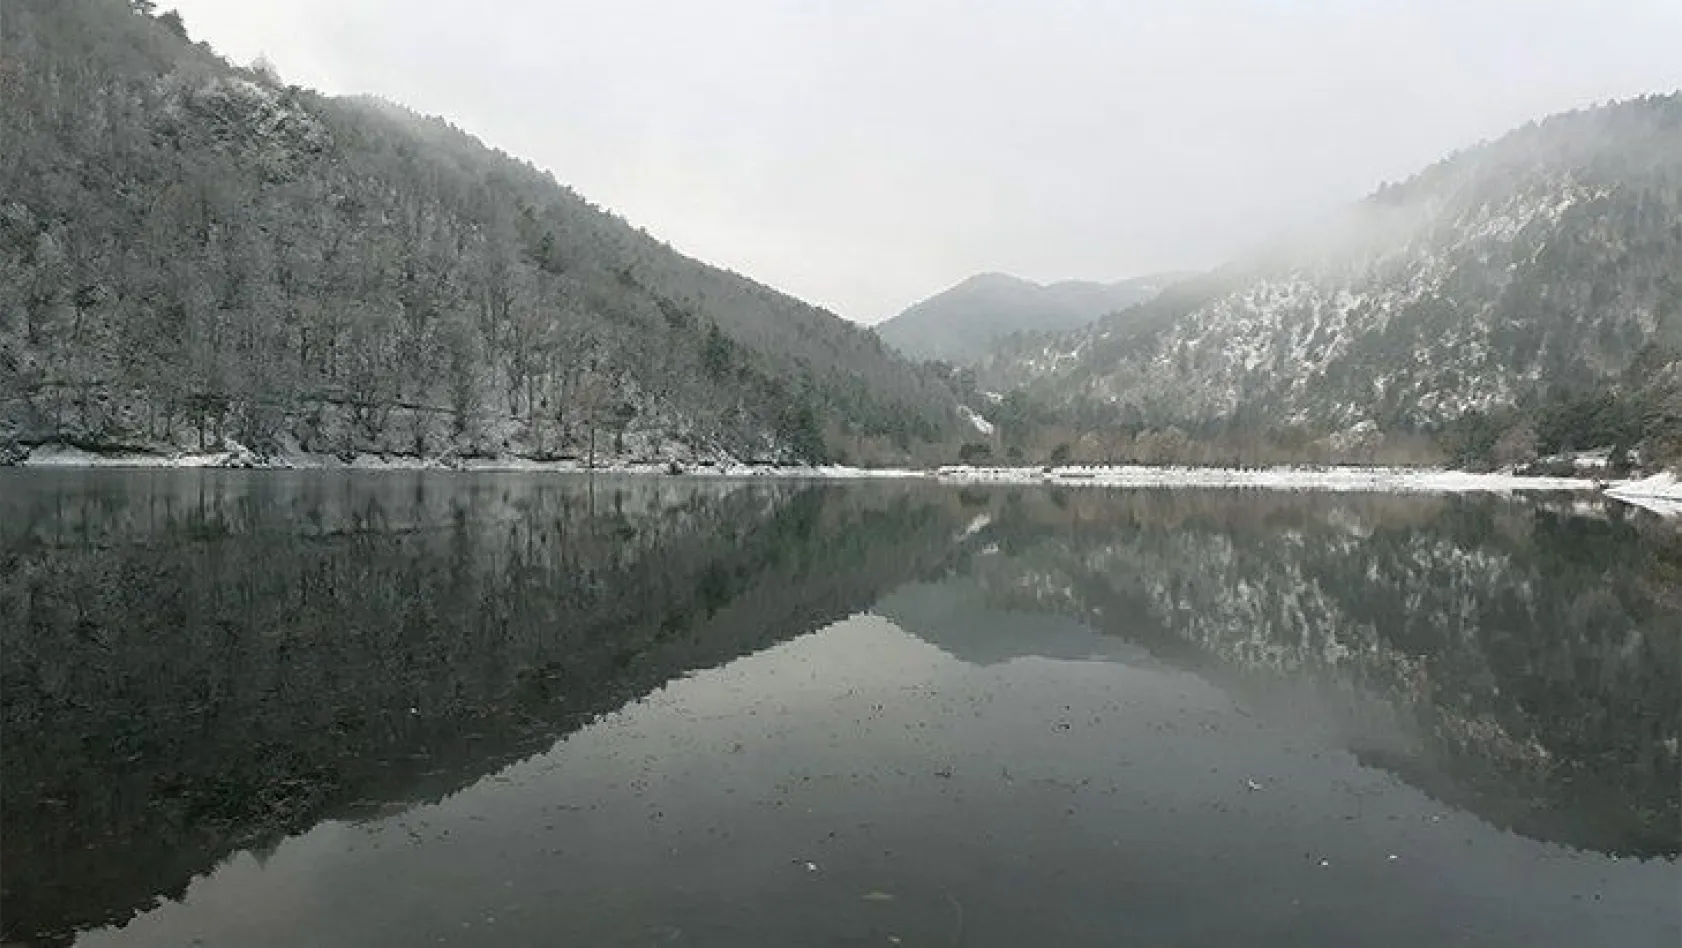 Boraboy Gölü'nde kar güzelliği